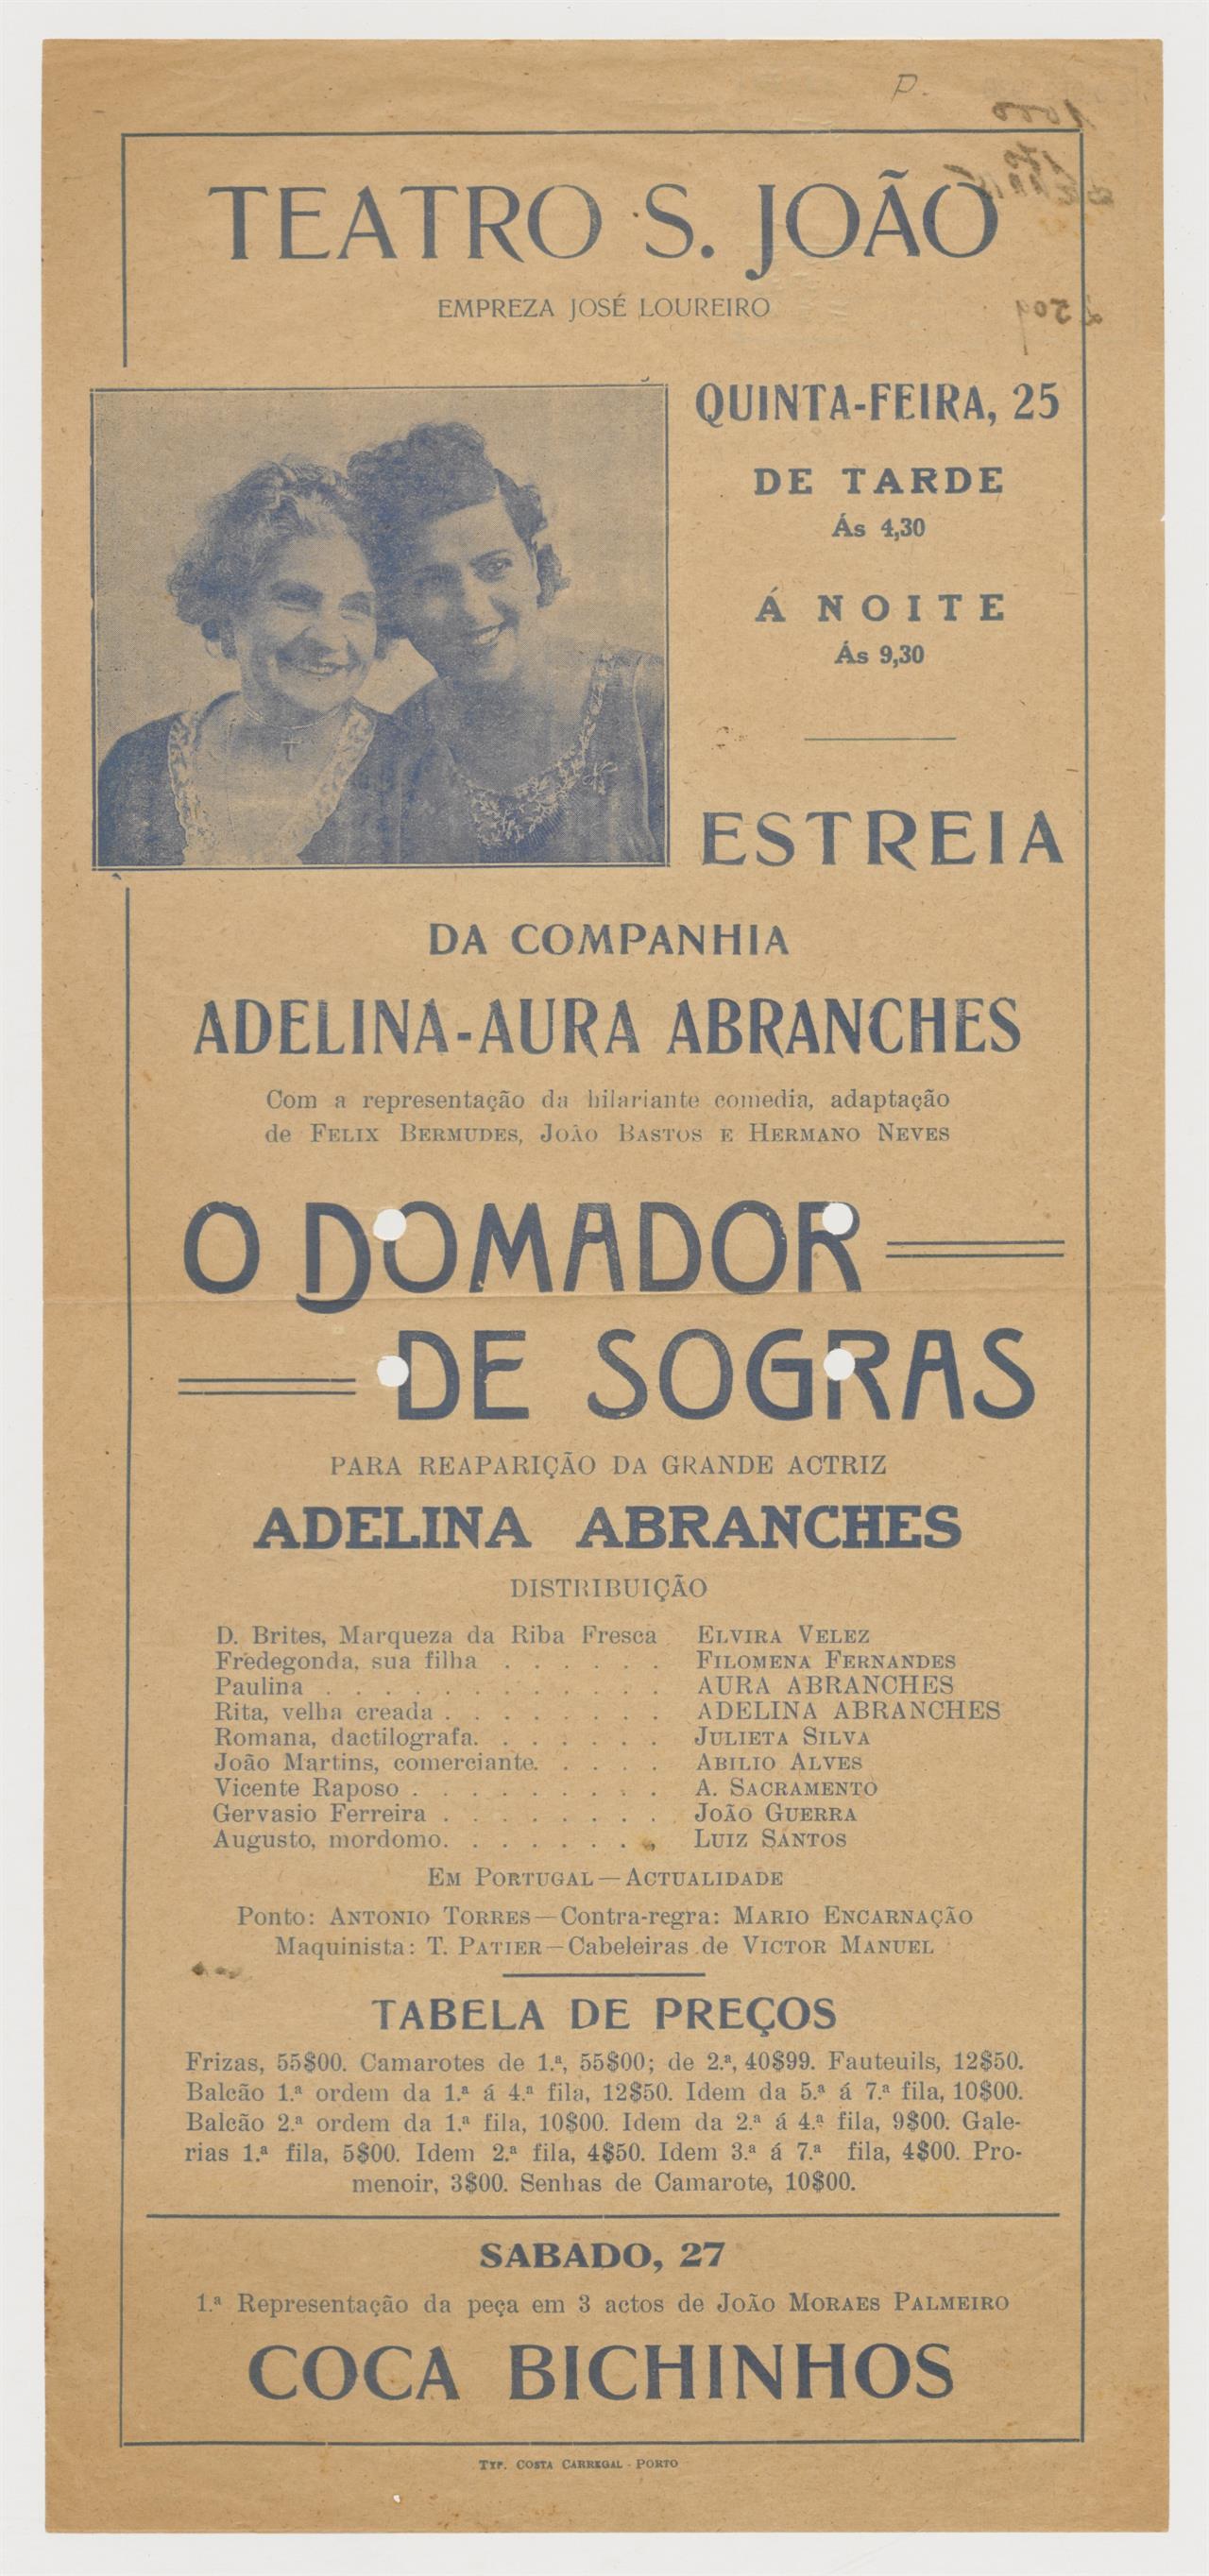 Teatro São João : O domador de sogras